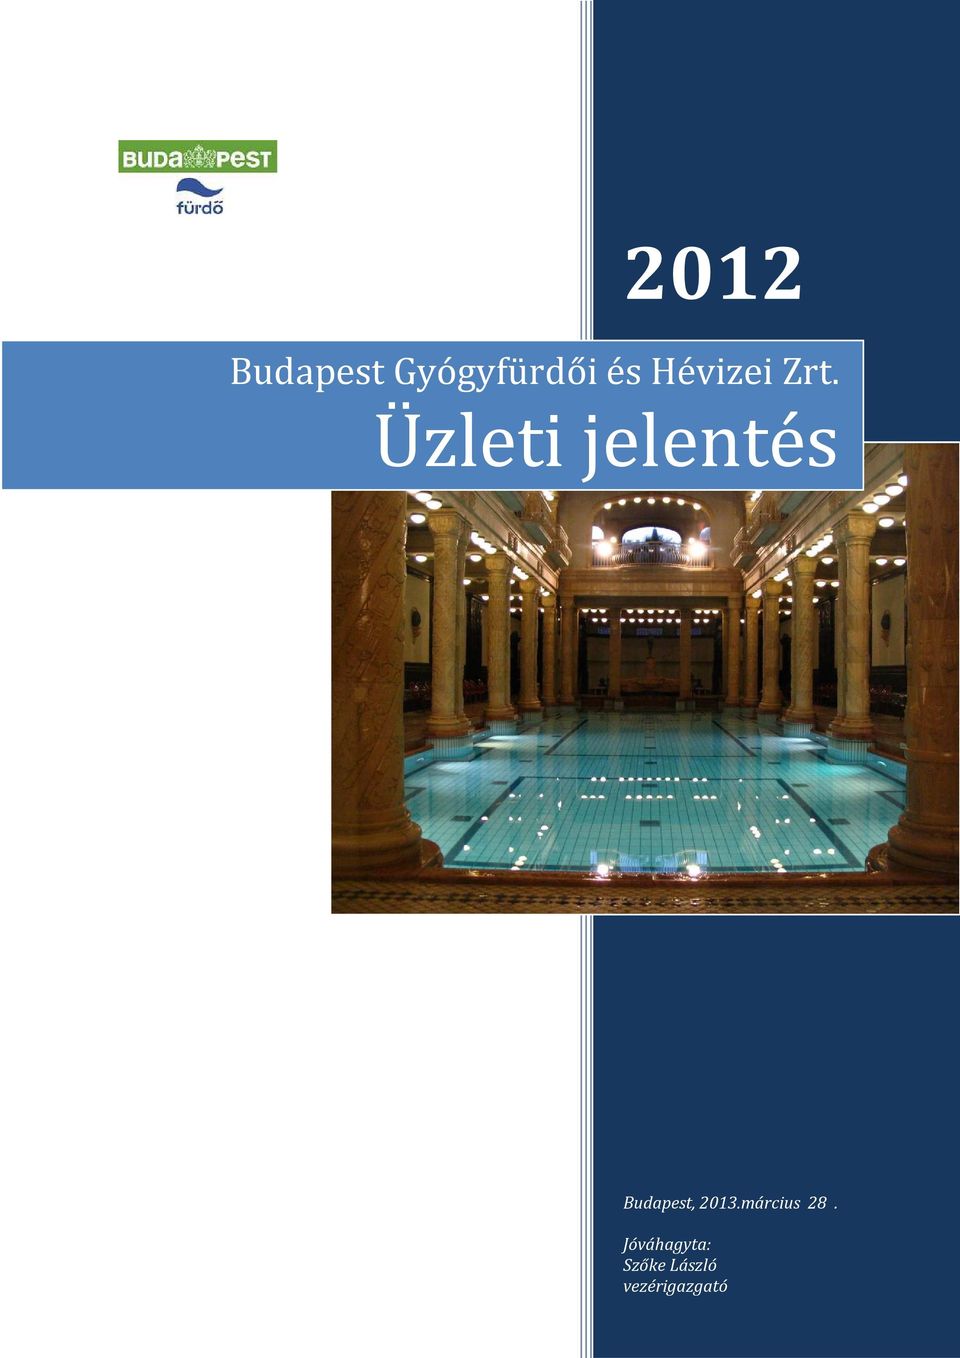 Üzleti jelentés Budapest, 2013.